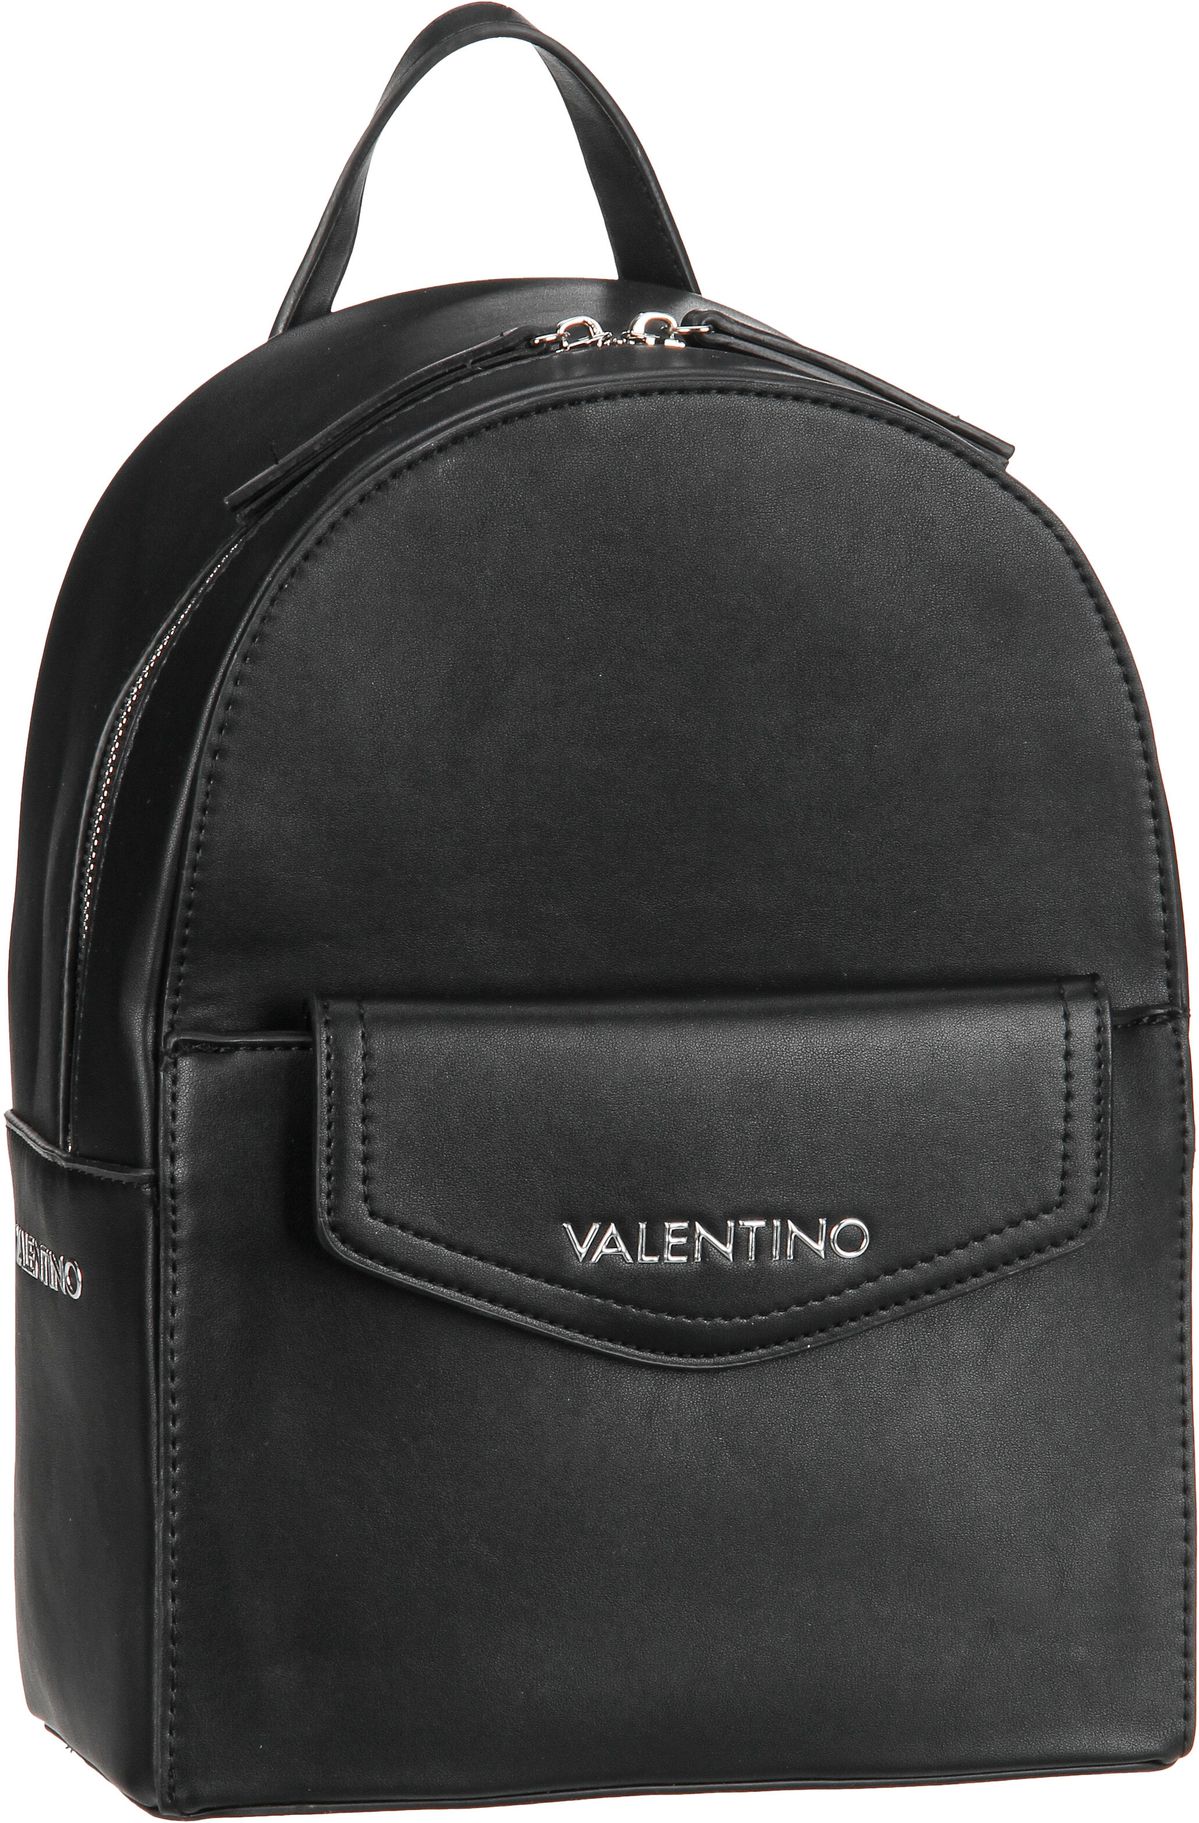 Valentino Hudson RE P02  in Schwarz (7.9 Liter), Rucksack / Backpack von Valentino